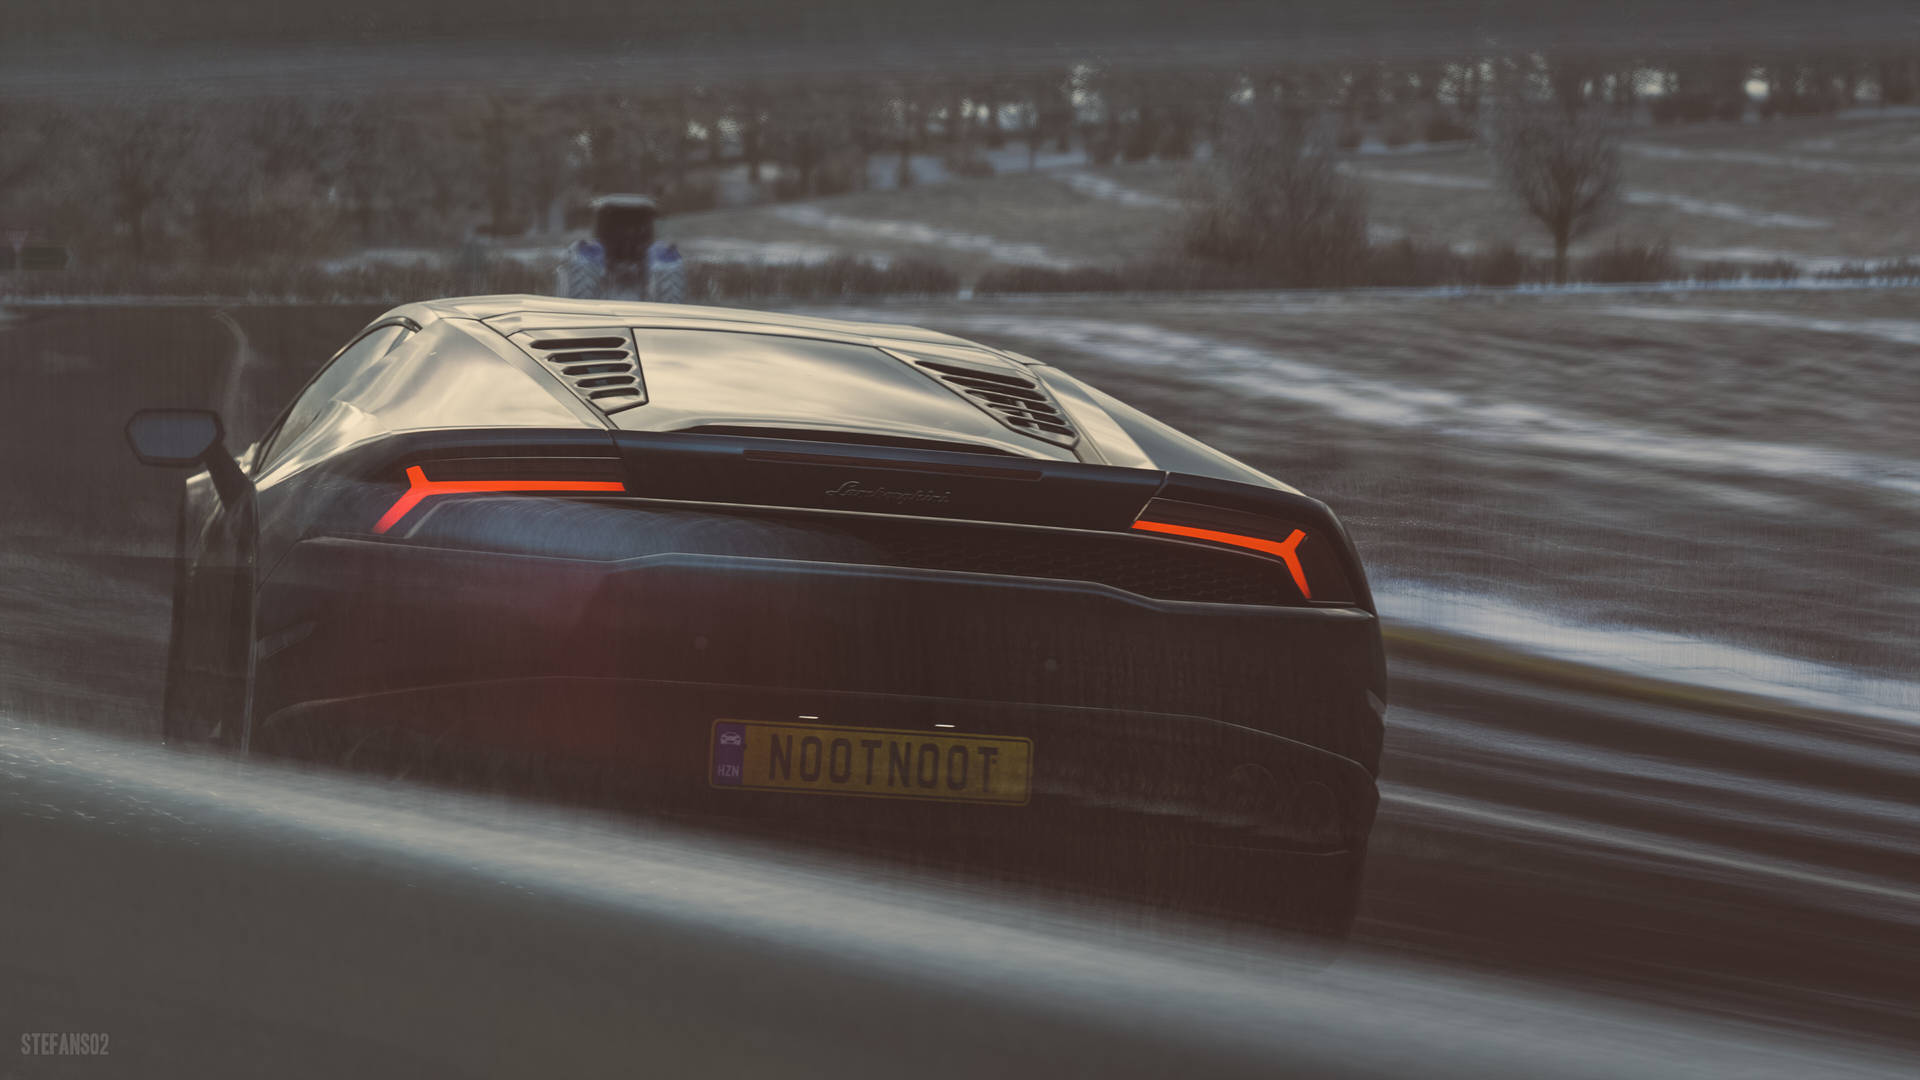 Caption: Unleashed Beauty in Forza Horizon 4 4K - Lamborghini Huracan Wallpaper